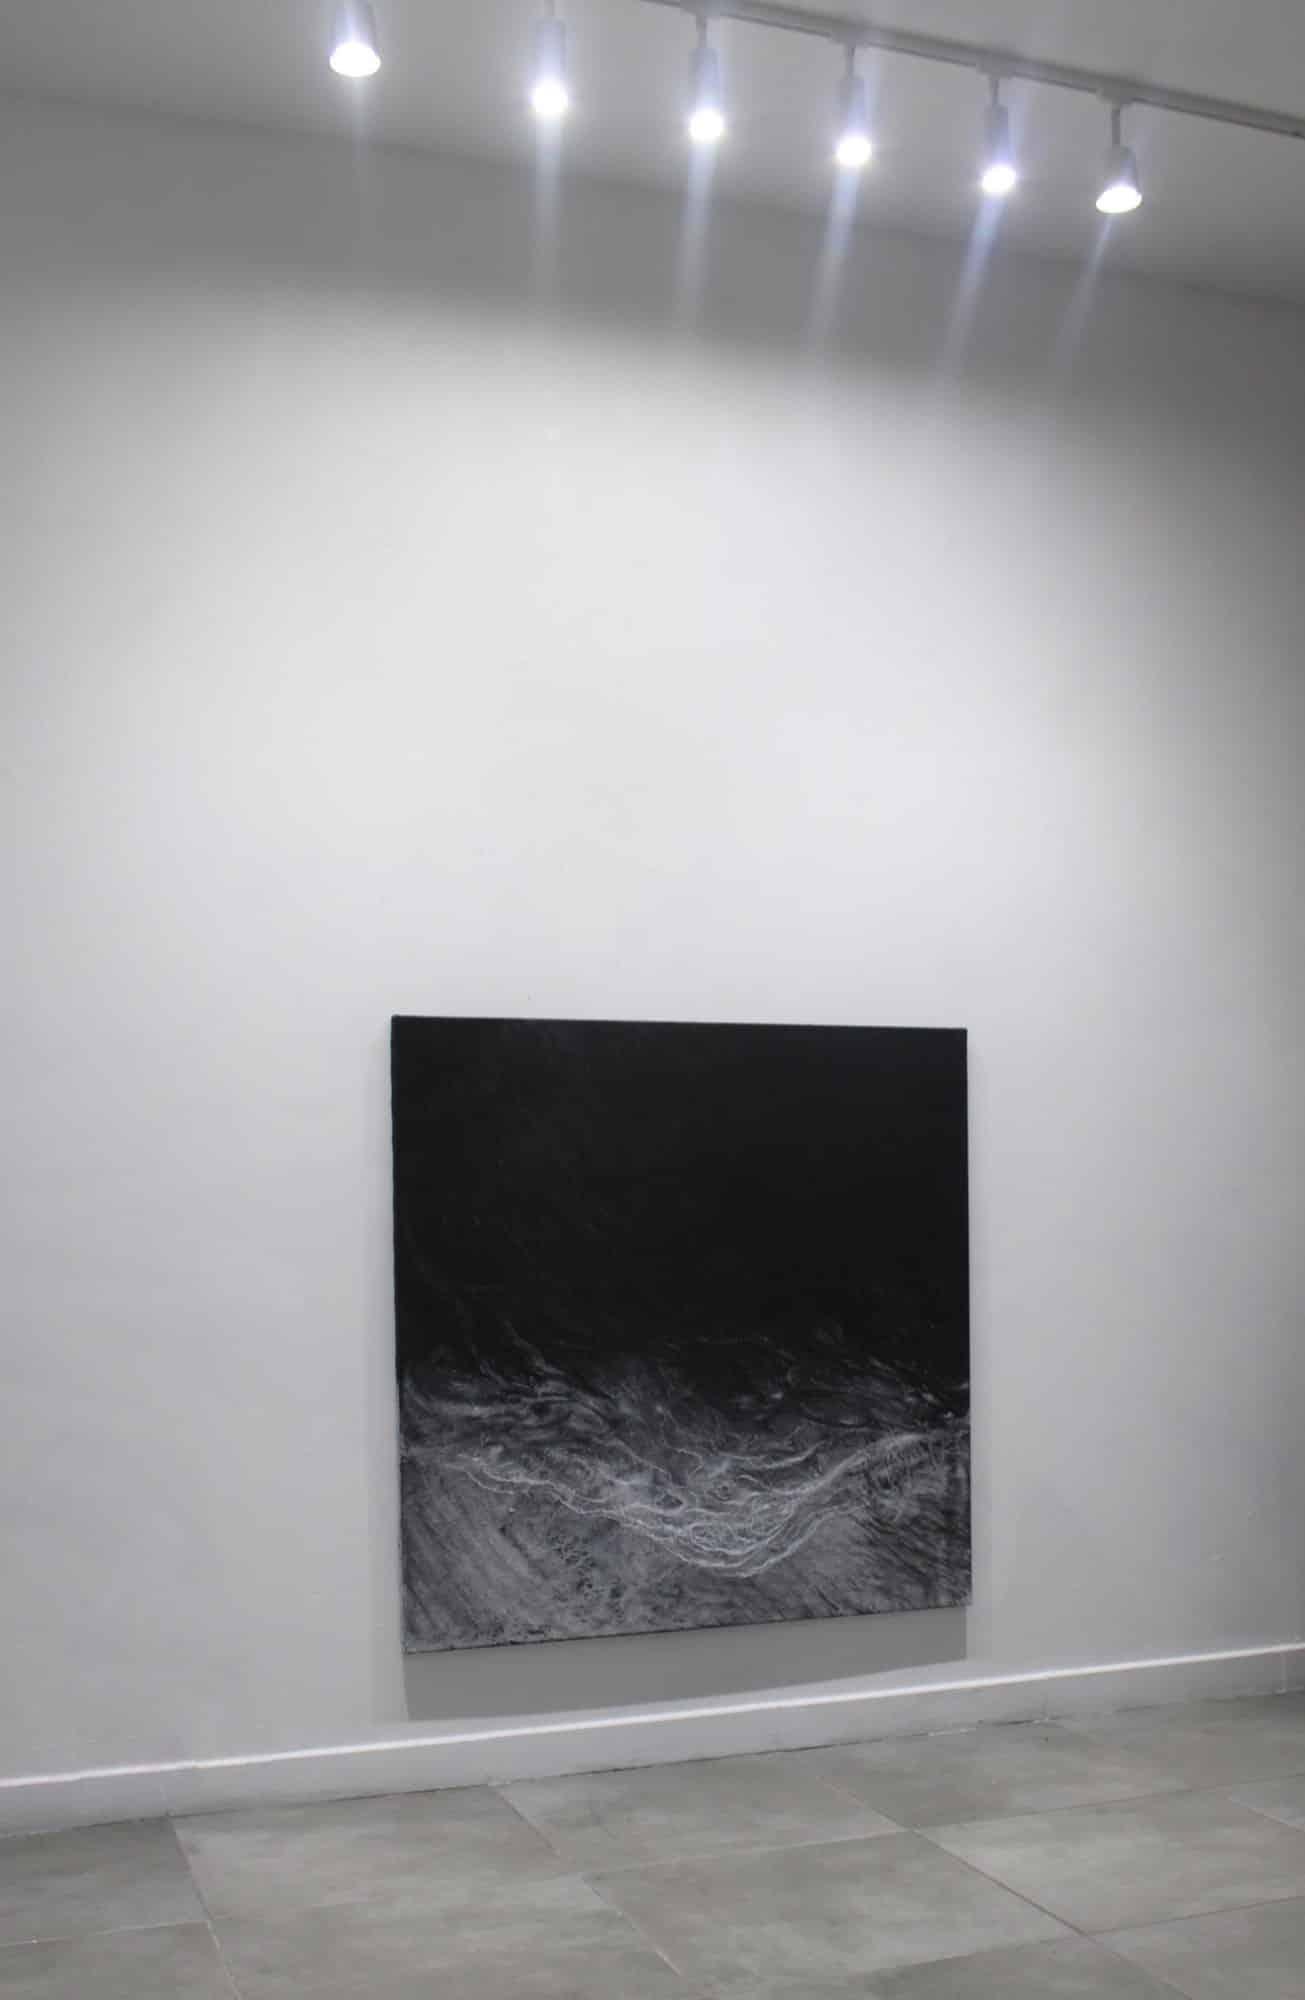 The void by Franco Salas Borquez - Black & white painting, ocean waves, seascape 2